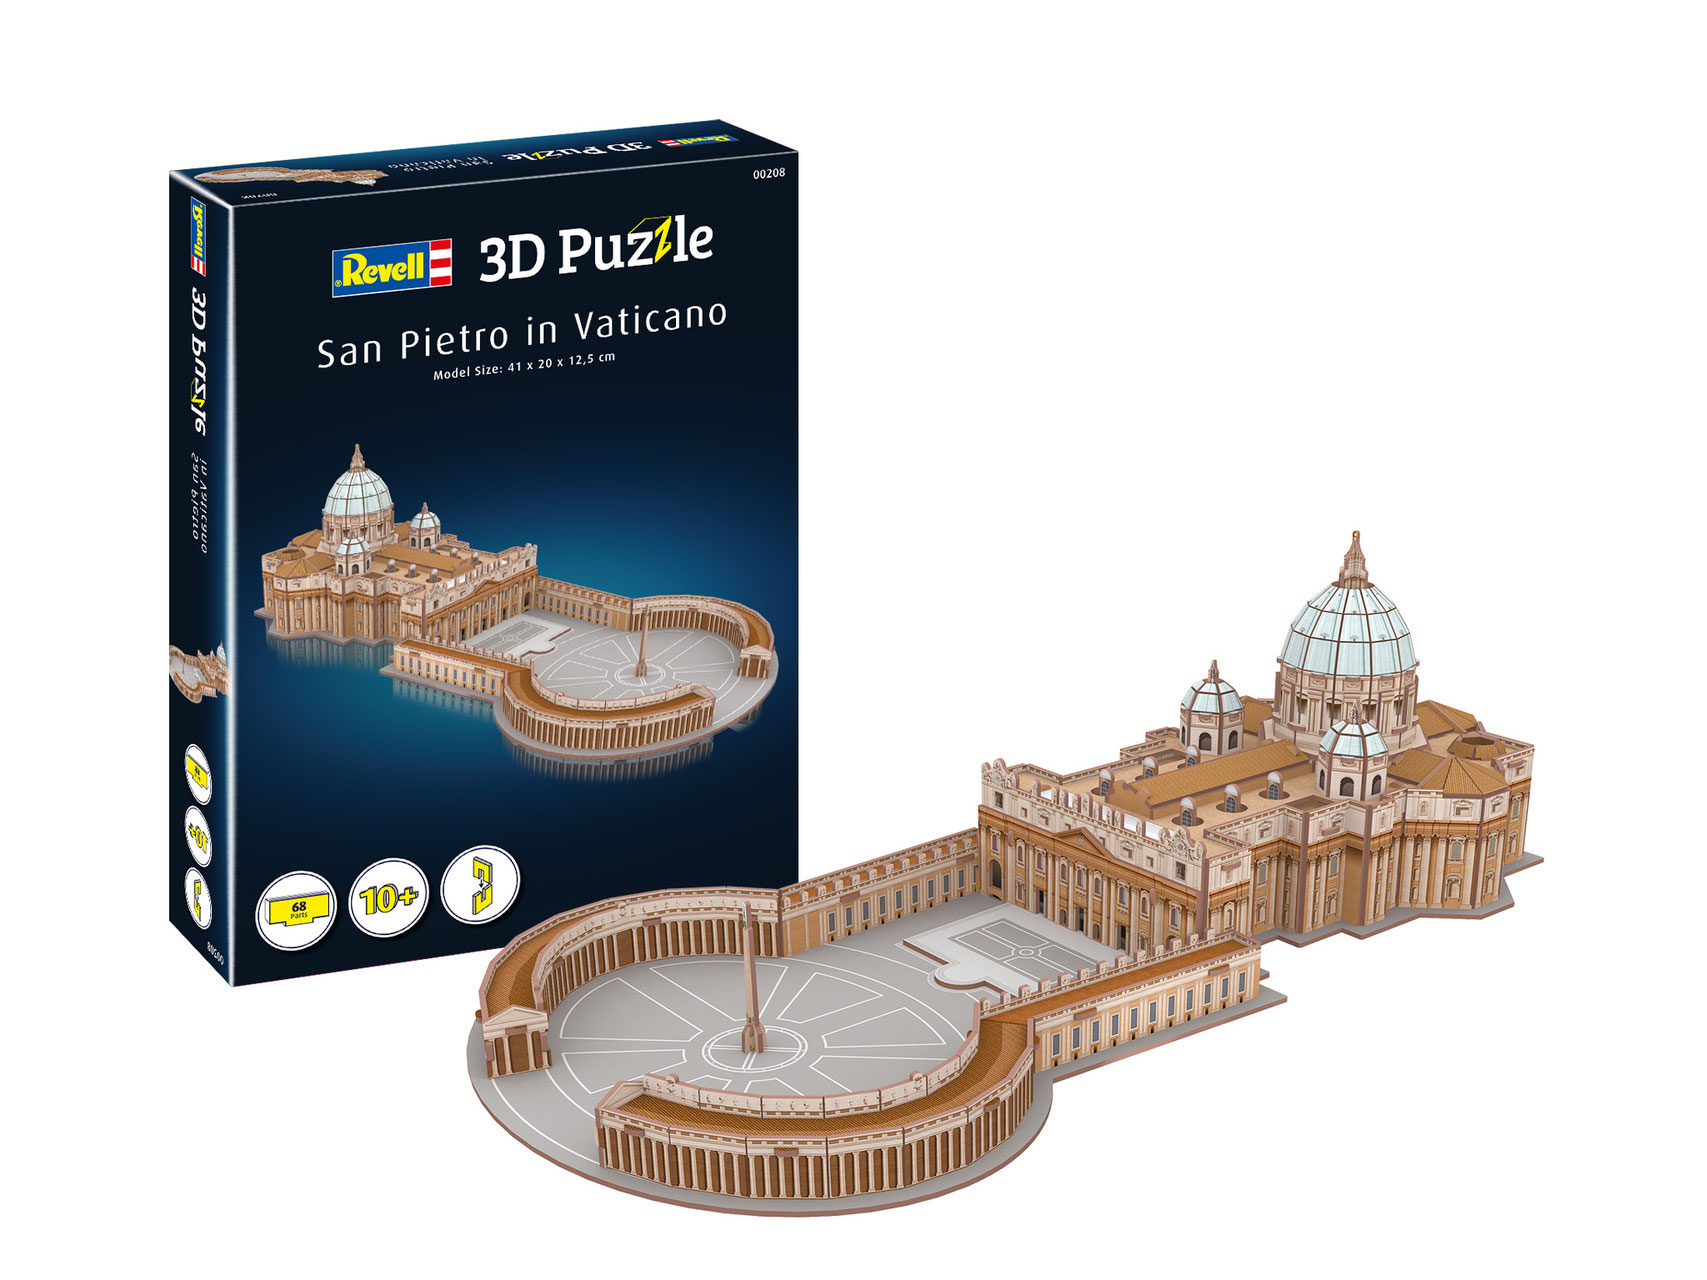 hoop Mok Minnaar 3D Puzzels - De website van oudestation!